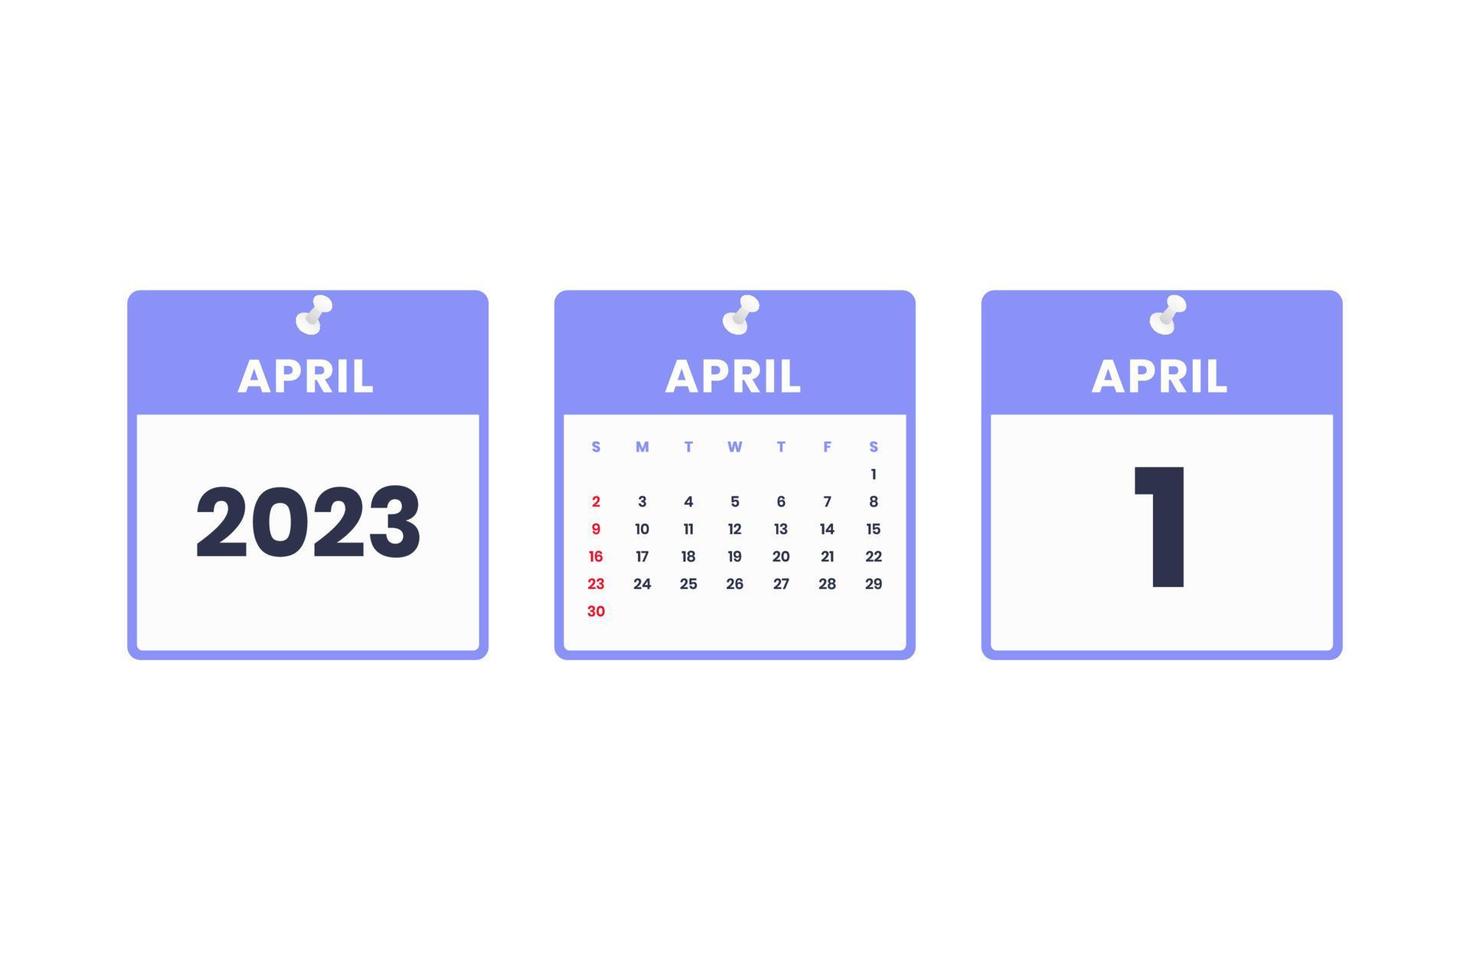 April calendar design. April 1 2023 calendar icon for schedule, appointment, important date concept vector